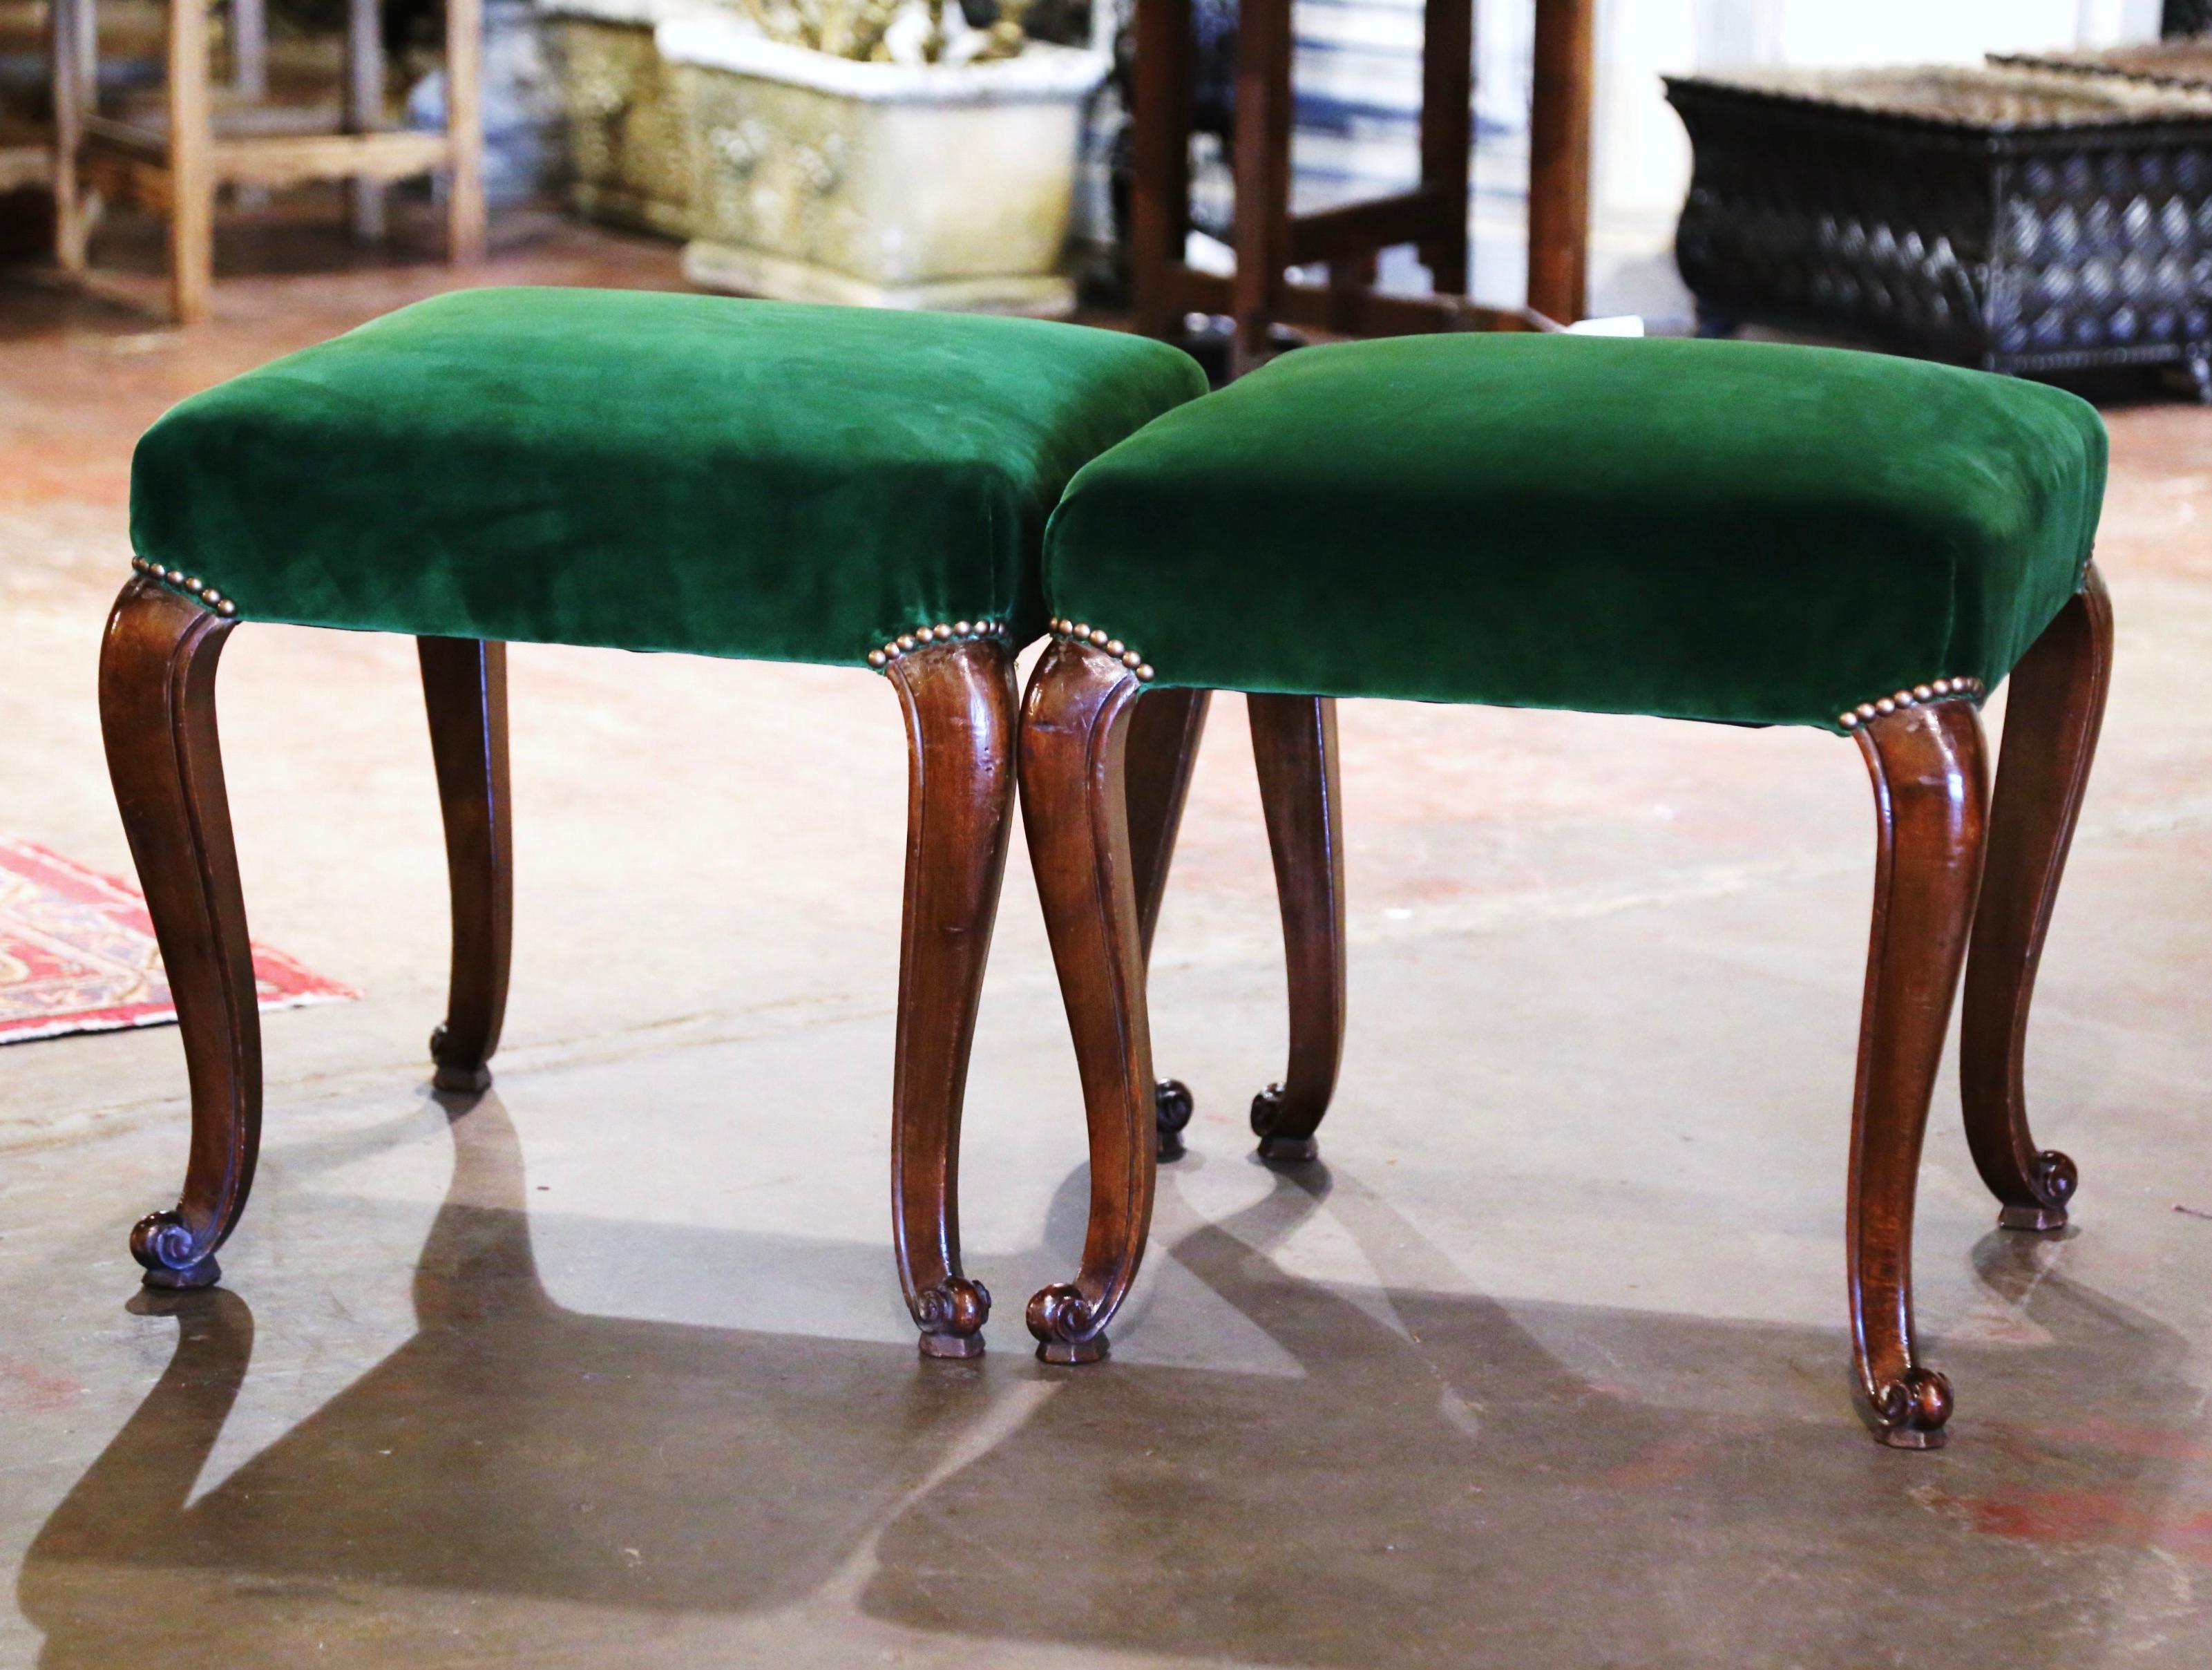 Ces élégants tabourets anciens ont été fabriqués dans le sud de la France vers 1950. Reposant sur des pieds cabrioles terminés par des pieds en escargot, chaque tabouret est doté d'un tablier droit. L'assise a été récemment recouverte d'un